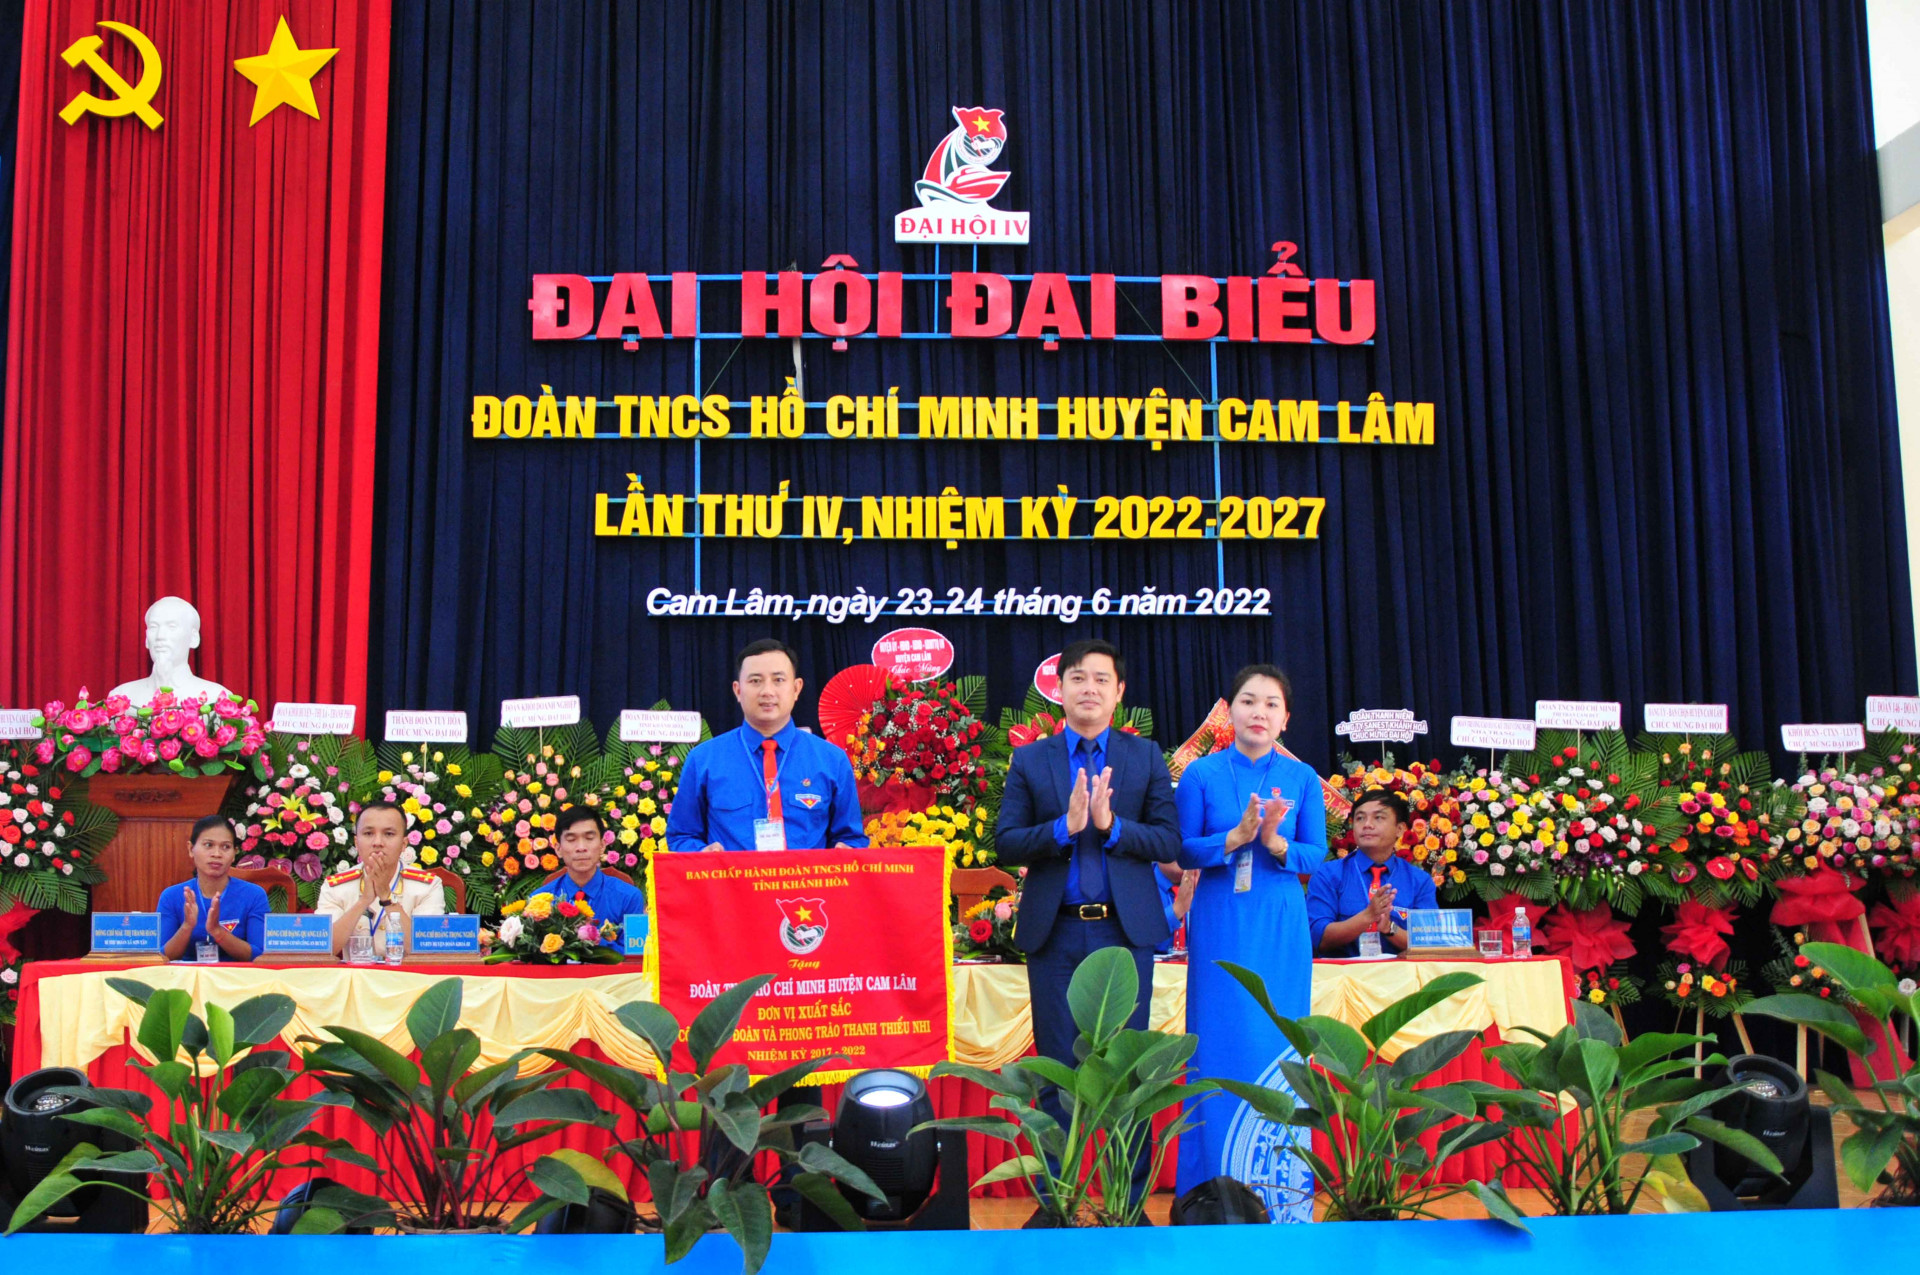 Tỉnh đoàn trao cờ thi đua xuất sắc nhiệm kỳ 2017 - 2022 cho Huyện đoàn Cam Lâm